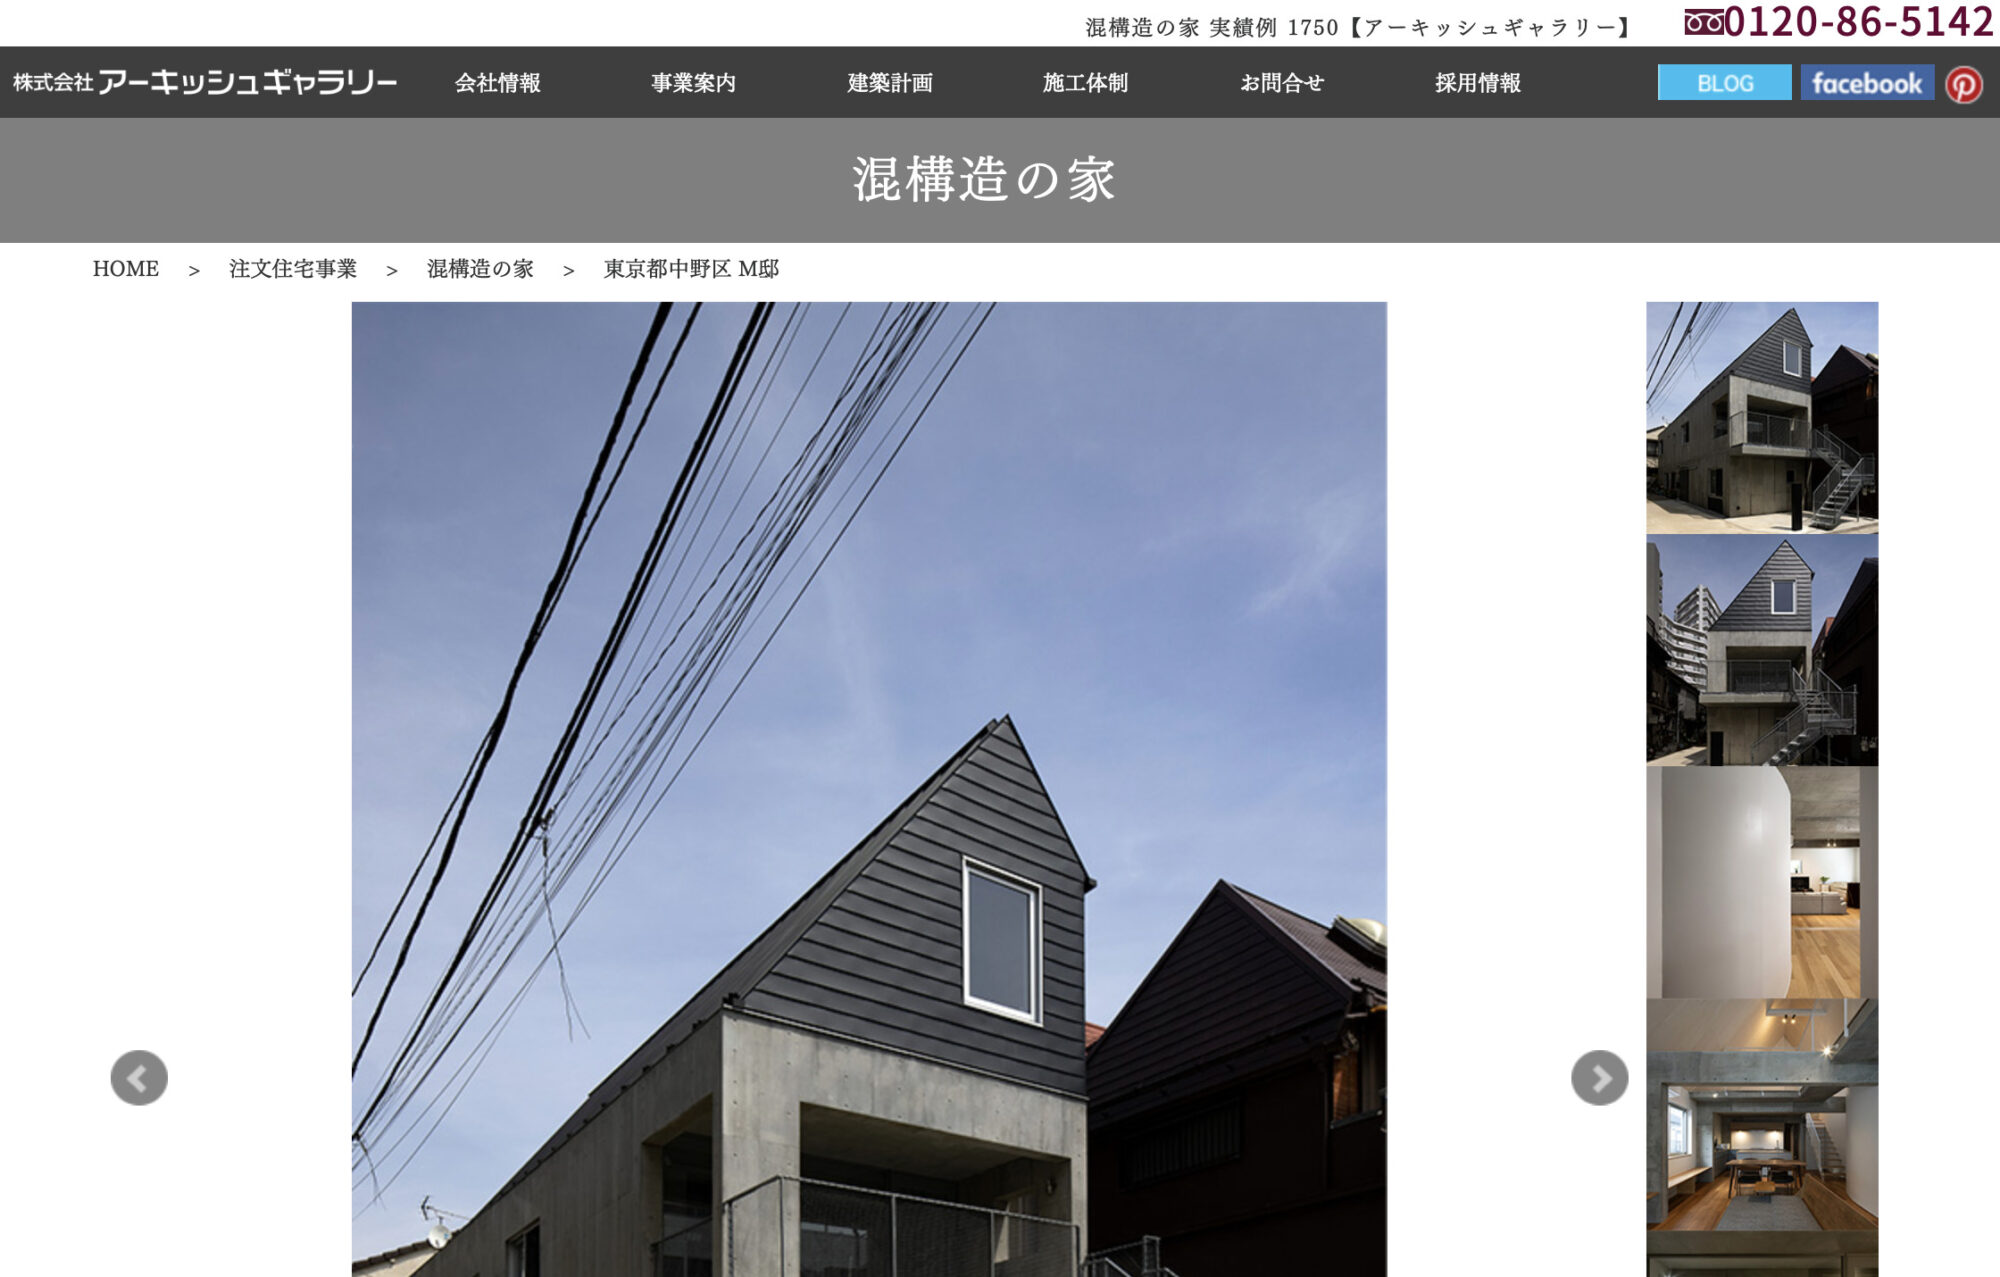 「中野本町の住宅」が施工会社であるアーキッシュギャラリーのサイトで紹介されました。